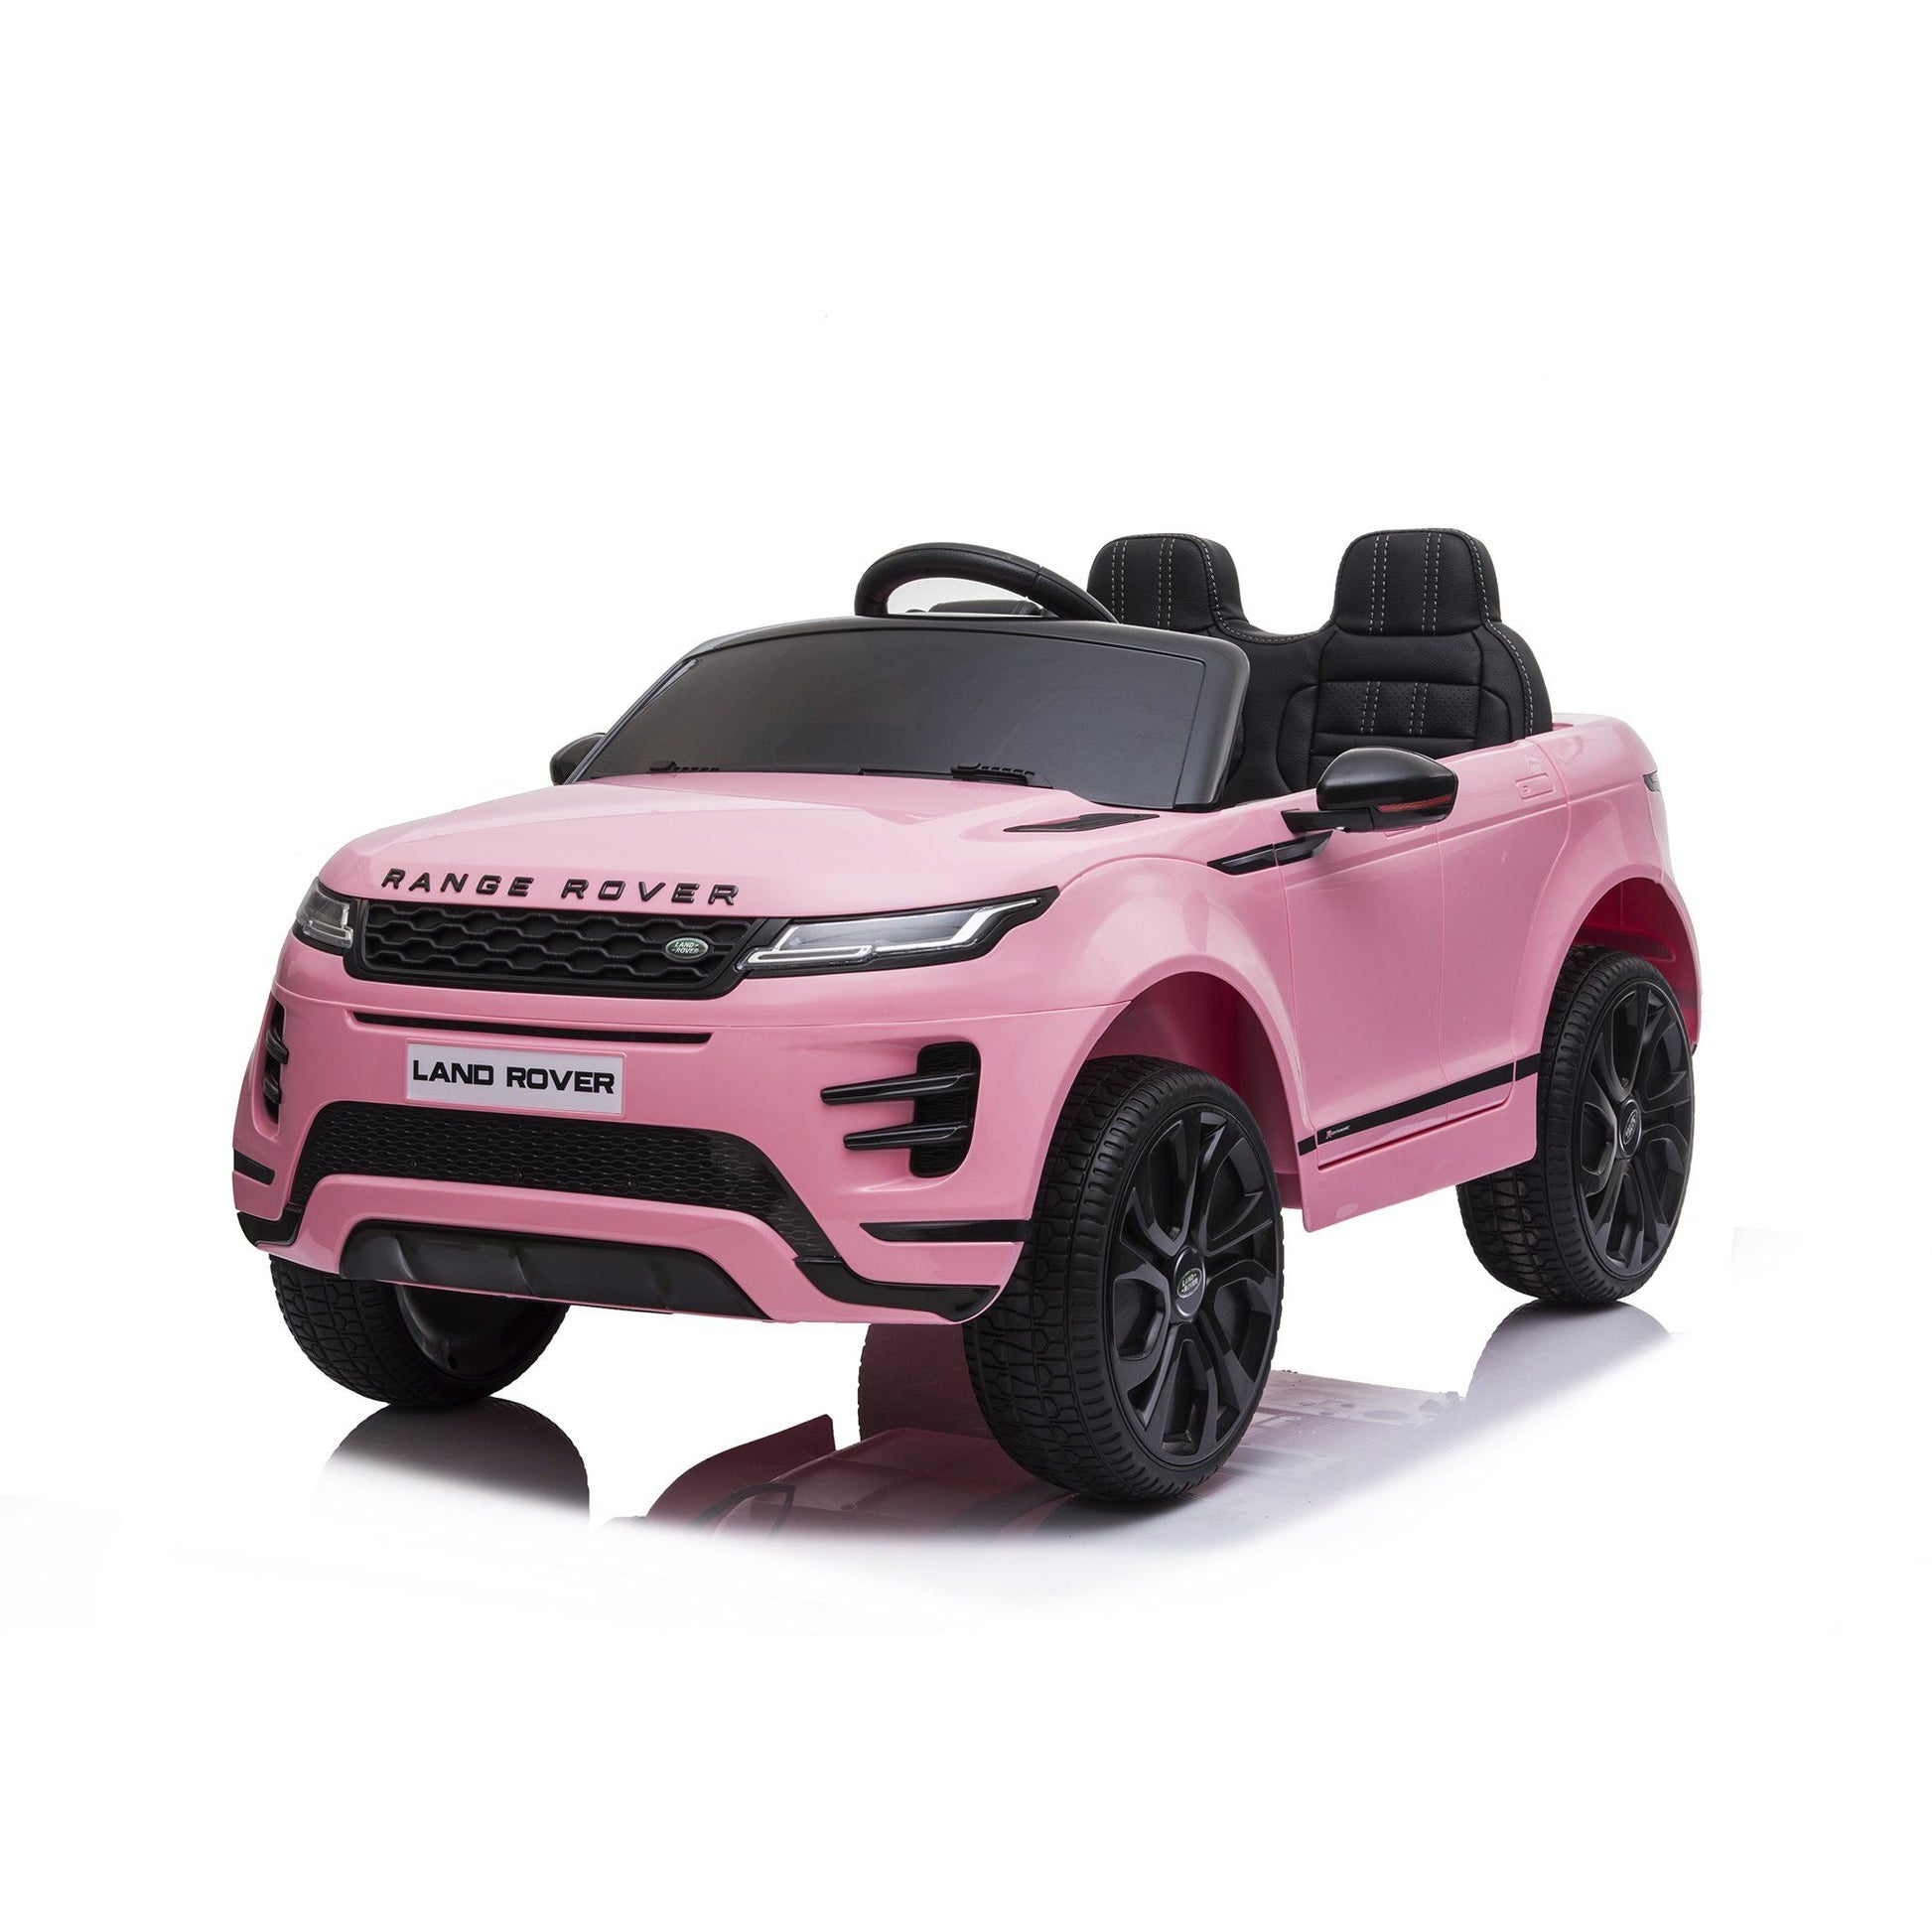 Freddo Toys | Range Rover Evoque 12V 1 Seater Ride on Car for Kids